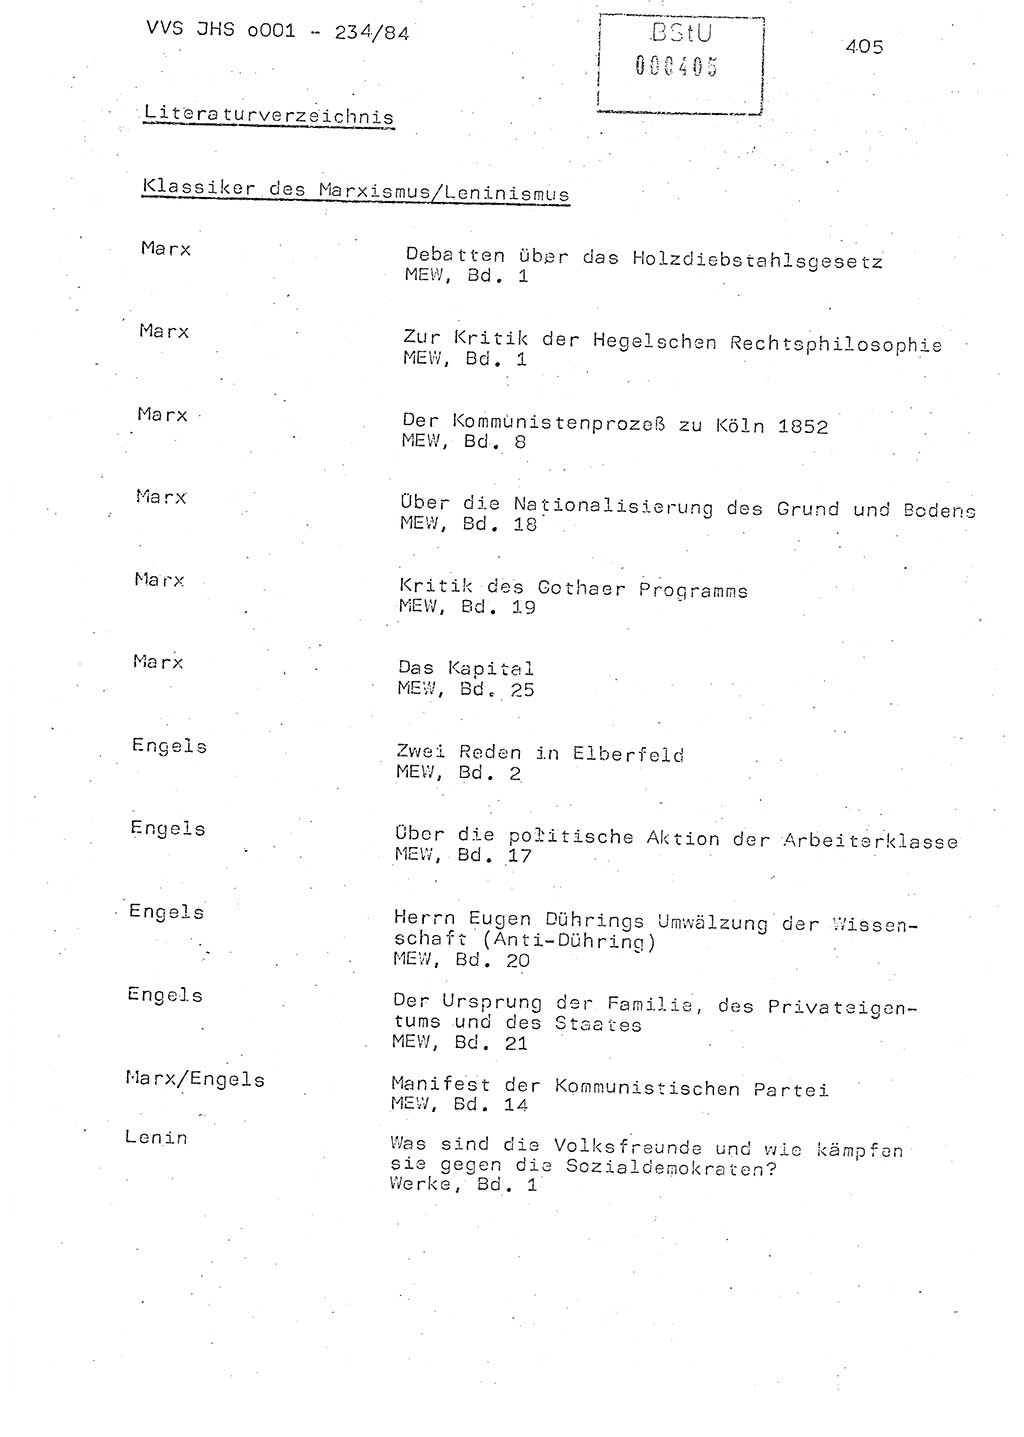 Dissertation Oberst Siegfried Rataizick (Abt. ⅩⅣ), Oberstleutnant Volkmar Heinz (Abt. ⅩⅣ), Oberstleutnant Werner Stein (HA Ⅸ), Hauptmann Heinz Conrad (JHS), Ministerium für Staatssicherheit (MfS) [Deutsche Demokratische Republik (DDR)], Juristische Hochschule (JHS), Vertrauliche Verschlußsache (VVS) o001-234/84, Potsdam 1984, Seite 405 (Diss. MfS DDR JHS VVS o001-234/84 1984, S. 405)